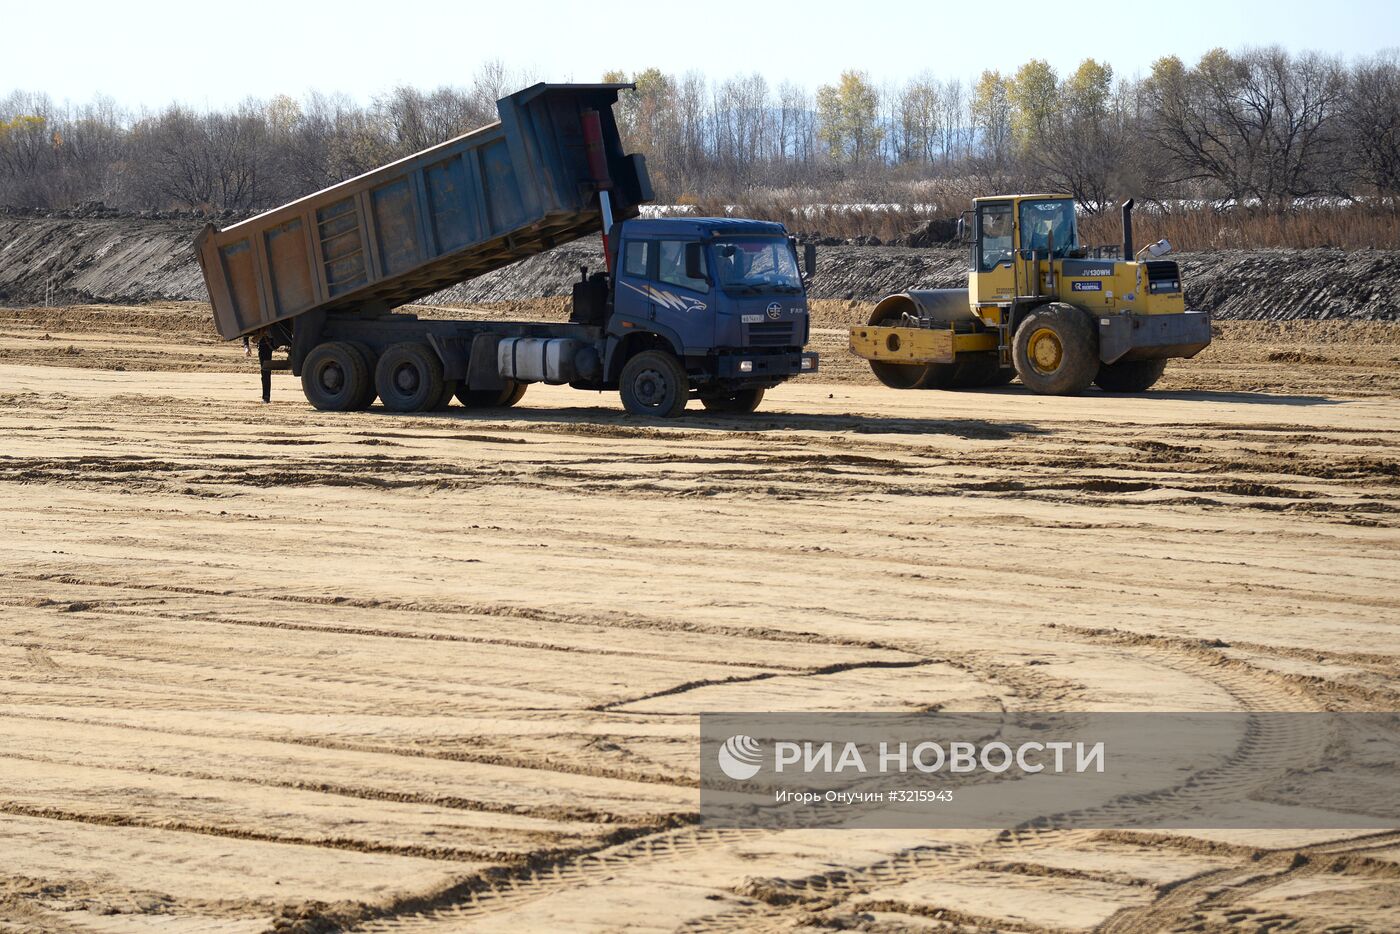 Строительство дороги "Обход Хабаровска"